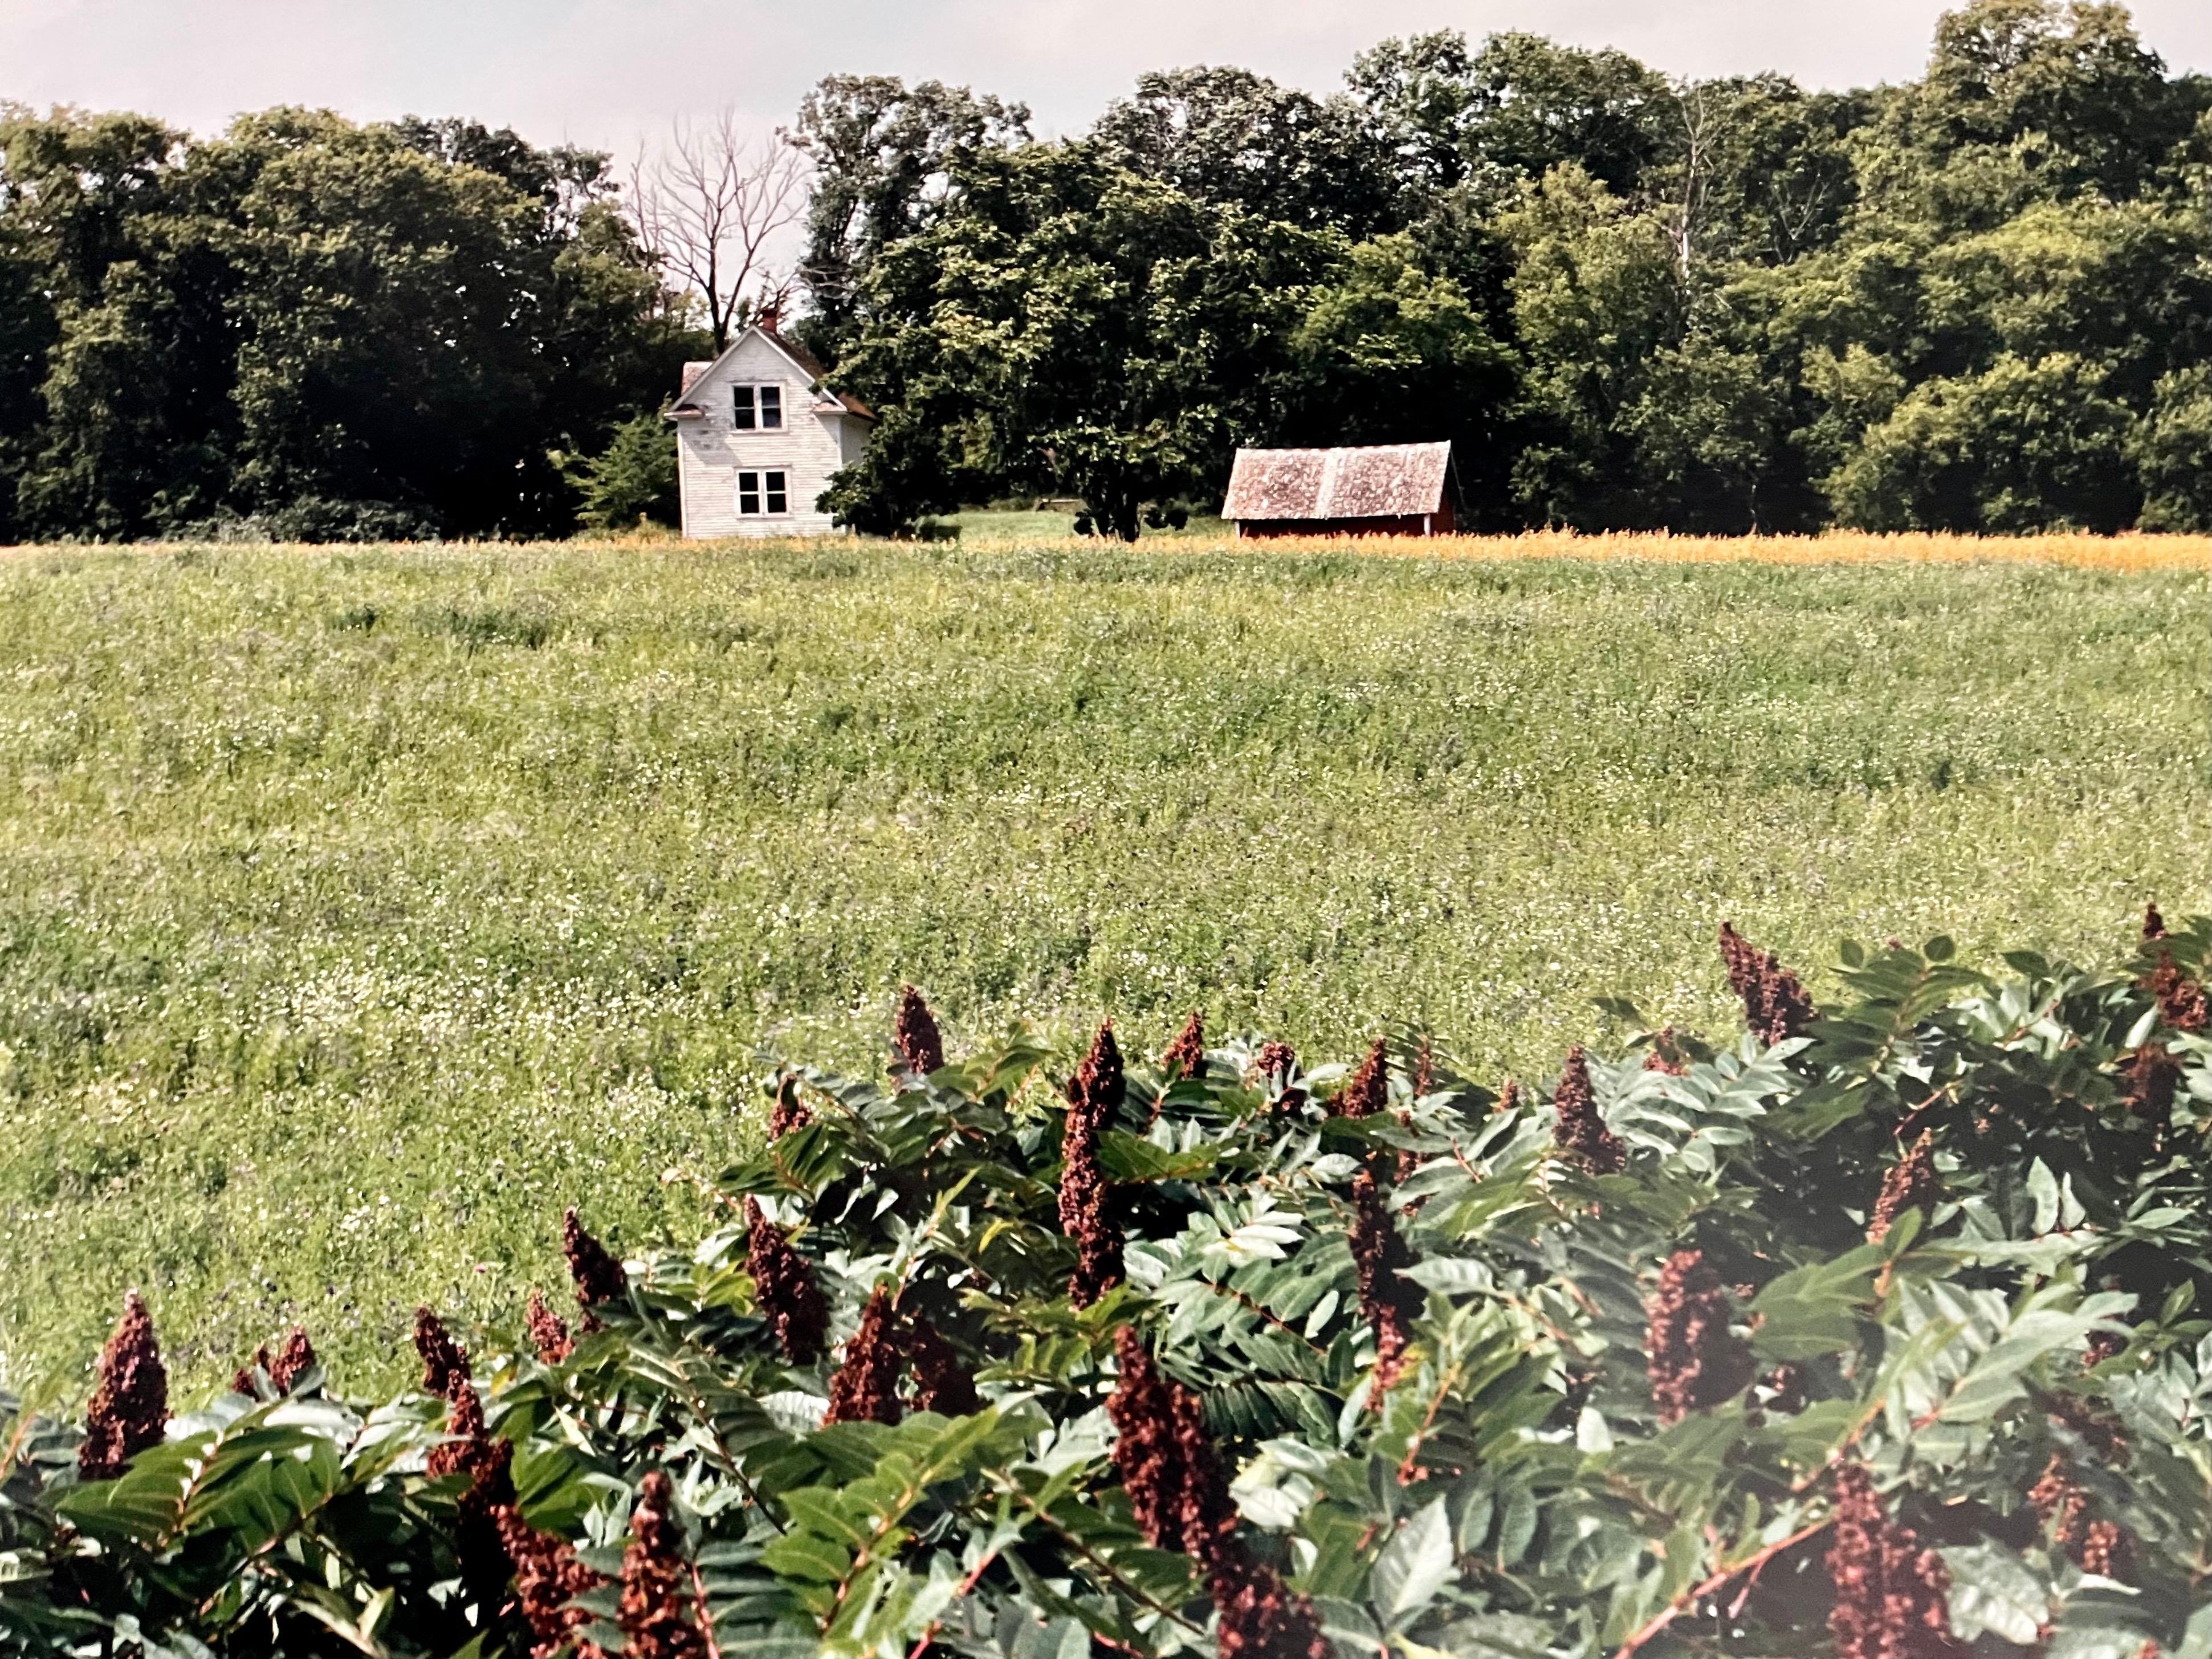 Homestead du canton d'Everts, été 1993
Fabuleuse photographie de paysage américain d'une scène de paysage rural. 
d'une petite édition de 20 exemplaires signés à la main
Tirage chromogène grand format sur papier professionnel Kodak
Les feuilles font